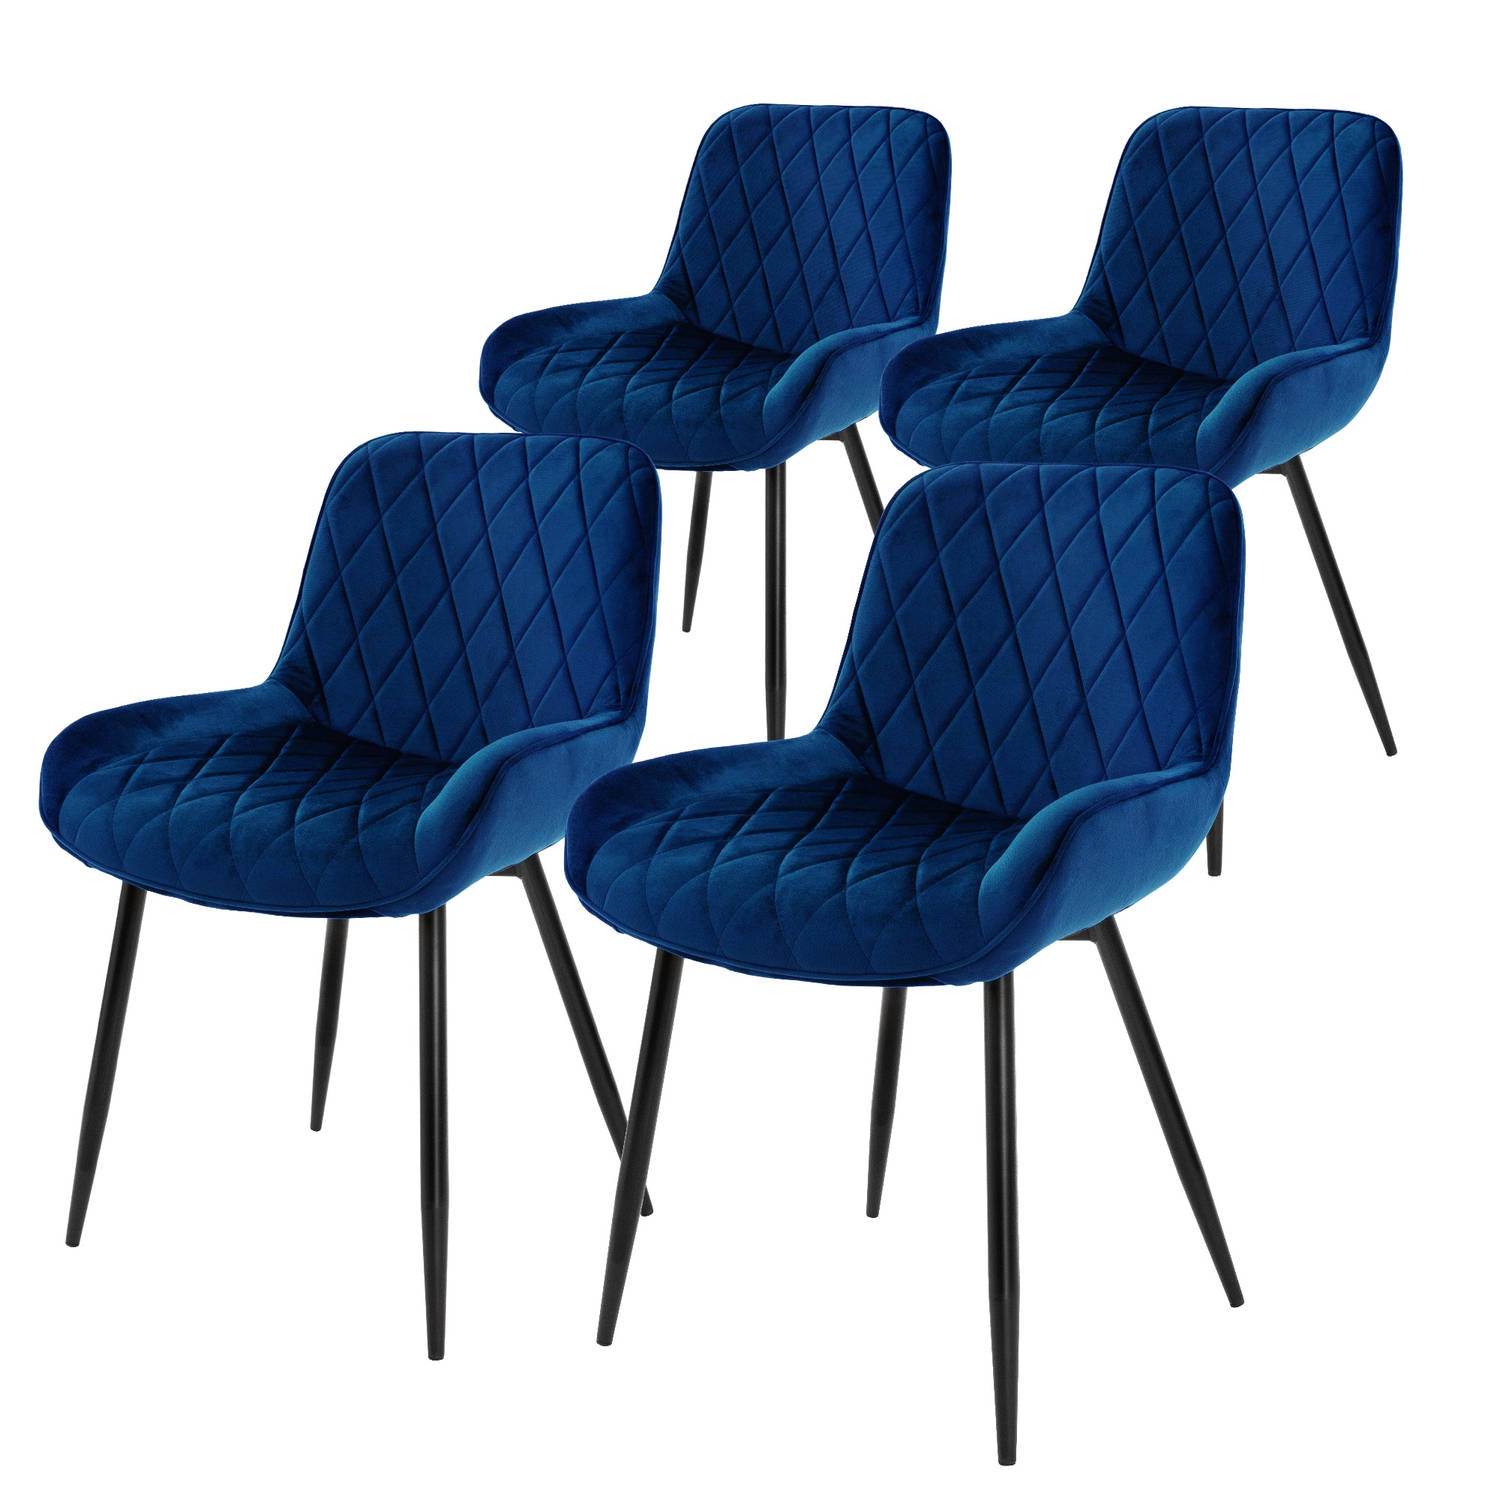 ML-Design Set van 4 Eetkamerstoelen Eetkamerstoel met rug en armleuningen, donkerblauw, fluwelen zitting, metalen poten, Keukenstoelen Woonkamerstoelen Gestoffeerde stoelen Krukken